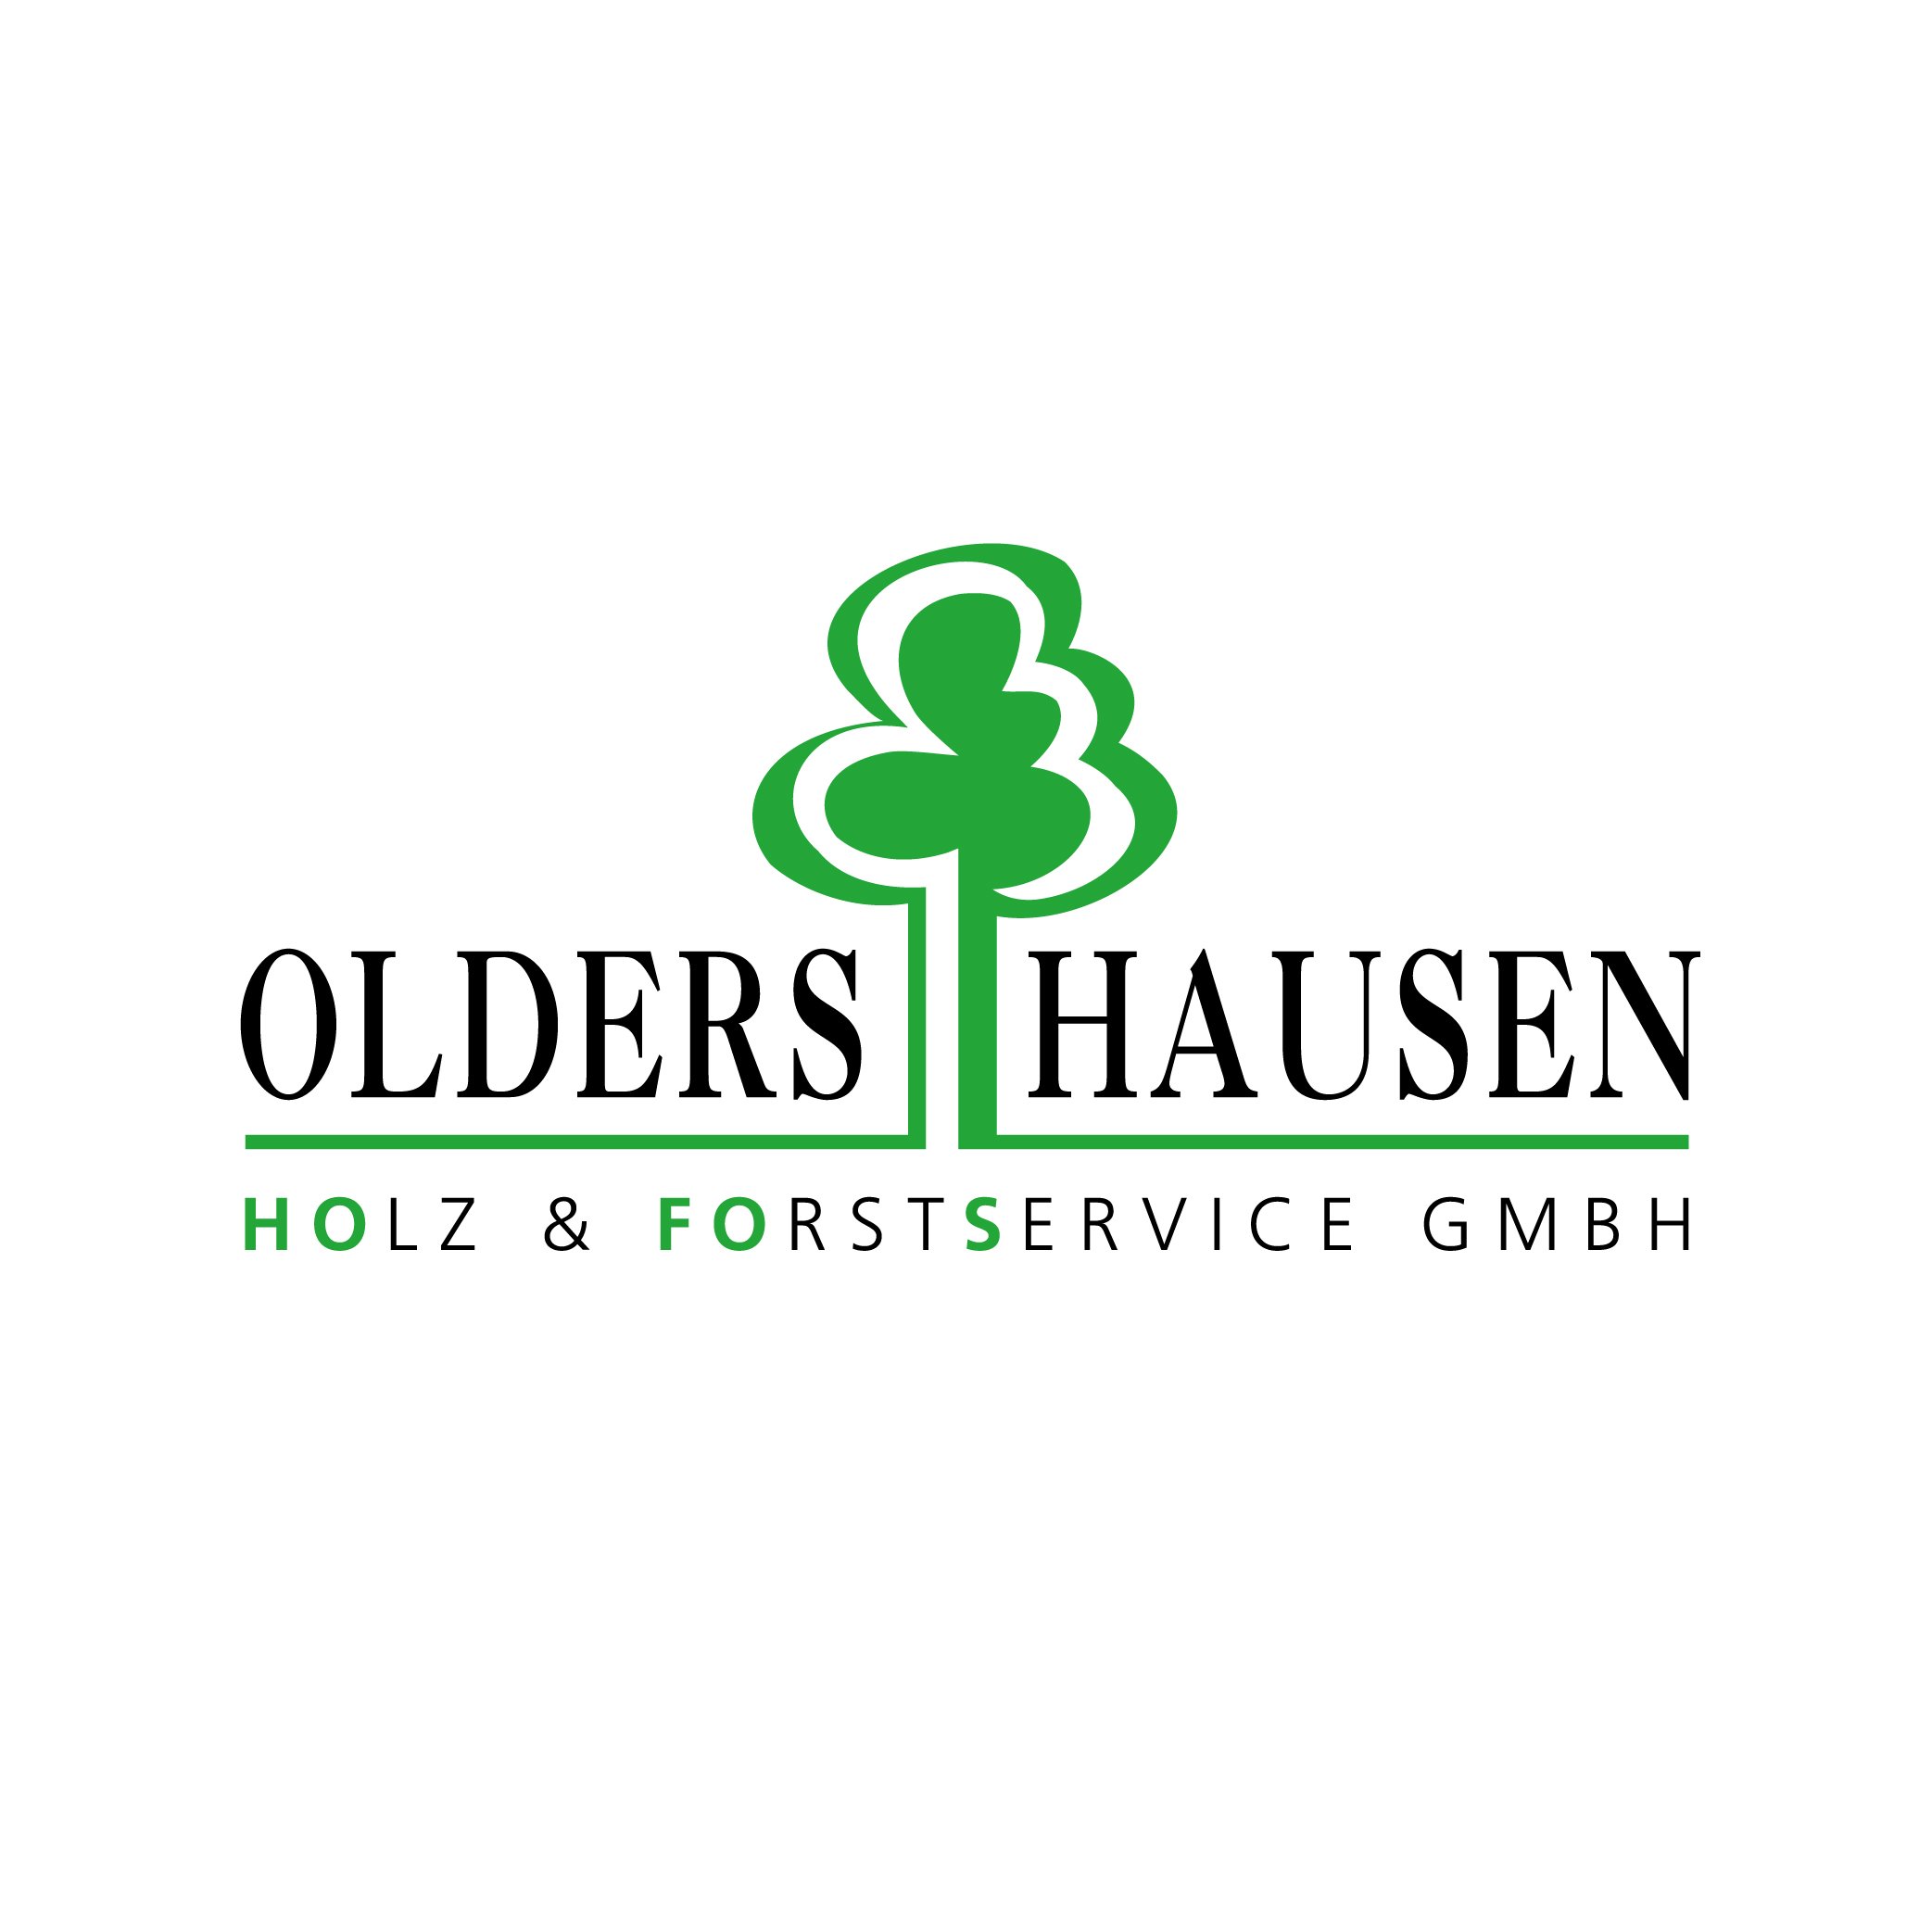 OLDERSHAUSEN HOFOS GmbH